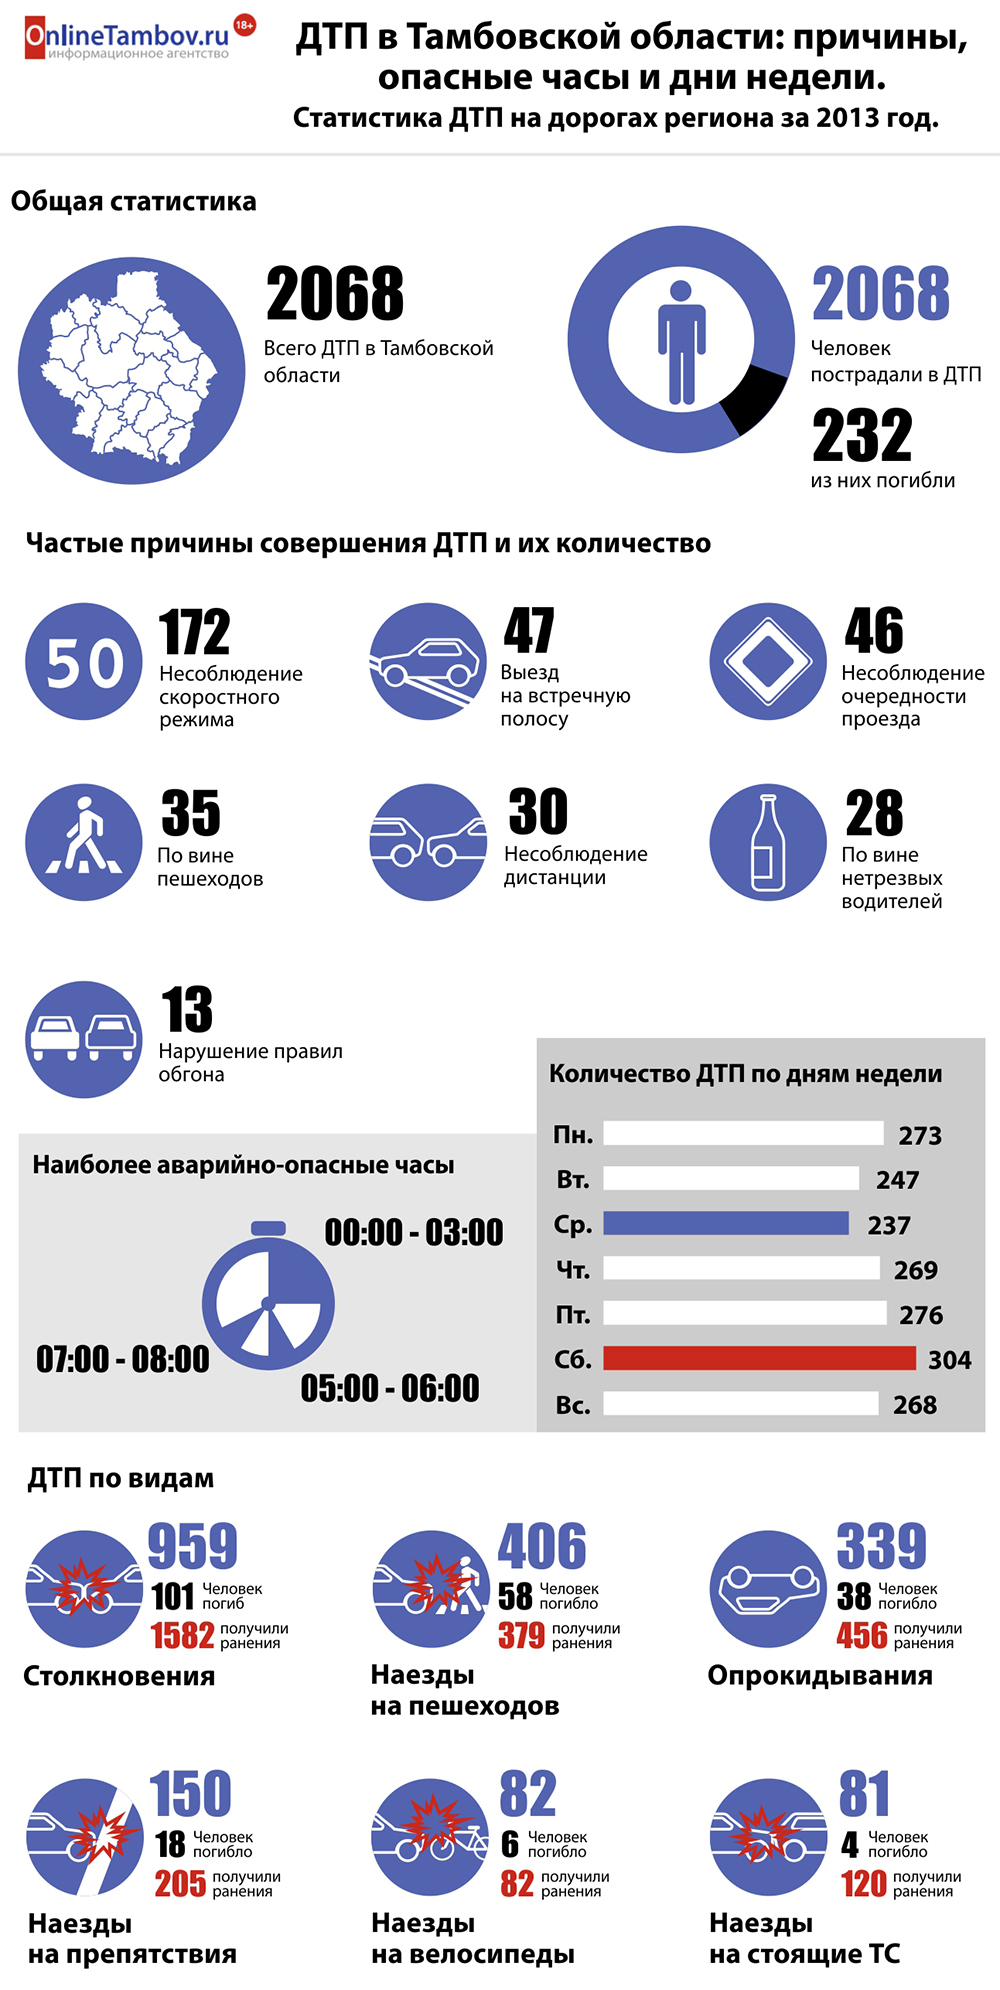 ДТП в Тамбовской области: причины, опасные часы и самые аварийные дни недели